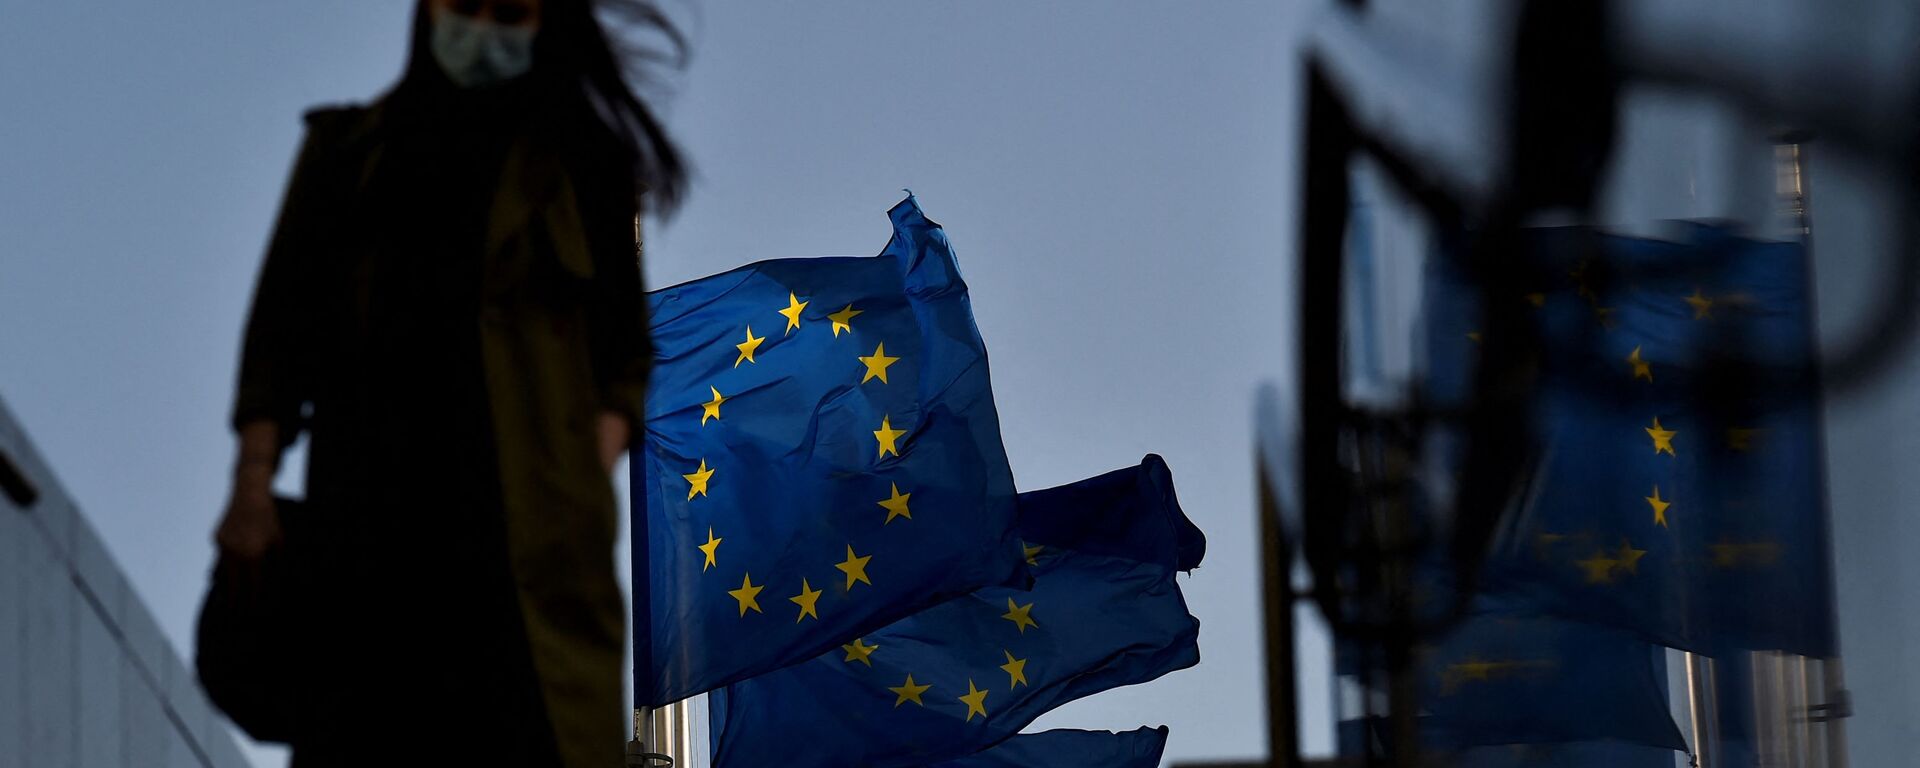 Женщина в защитной маске идет перед флагом Европейского Союза в районе штаб-квартиры ЕС в Брюсселе, 23 февраля 2021 г - Sputnik Абхазия, 1920, 27.05.2021